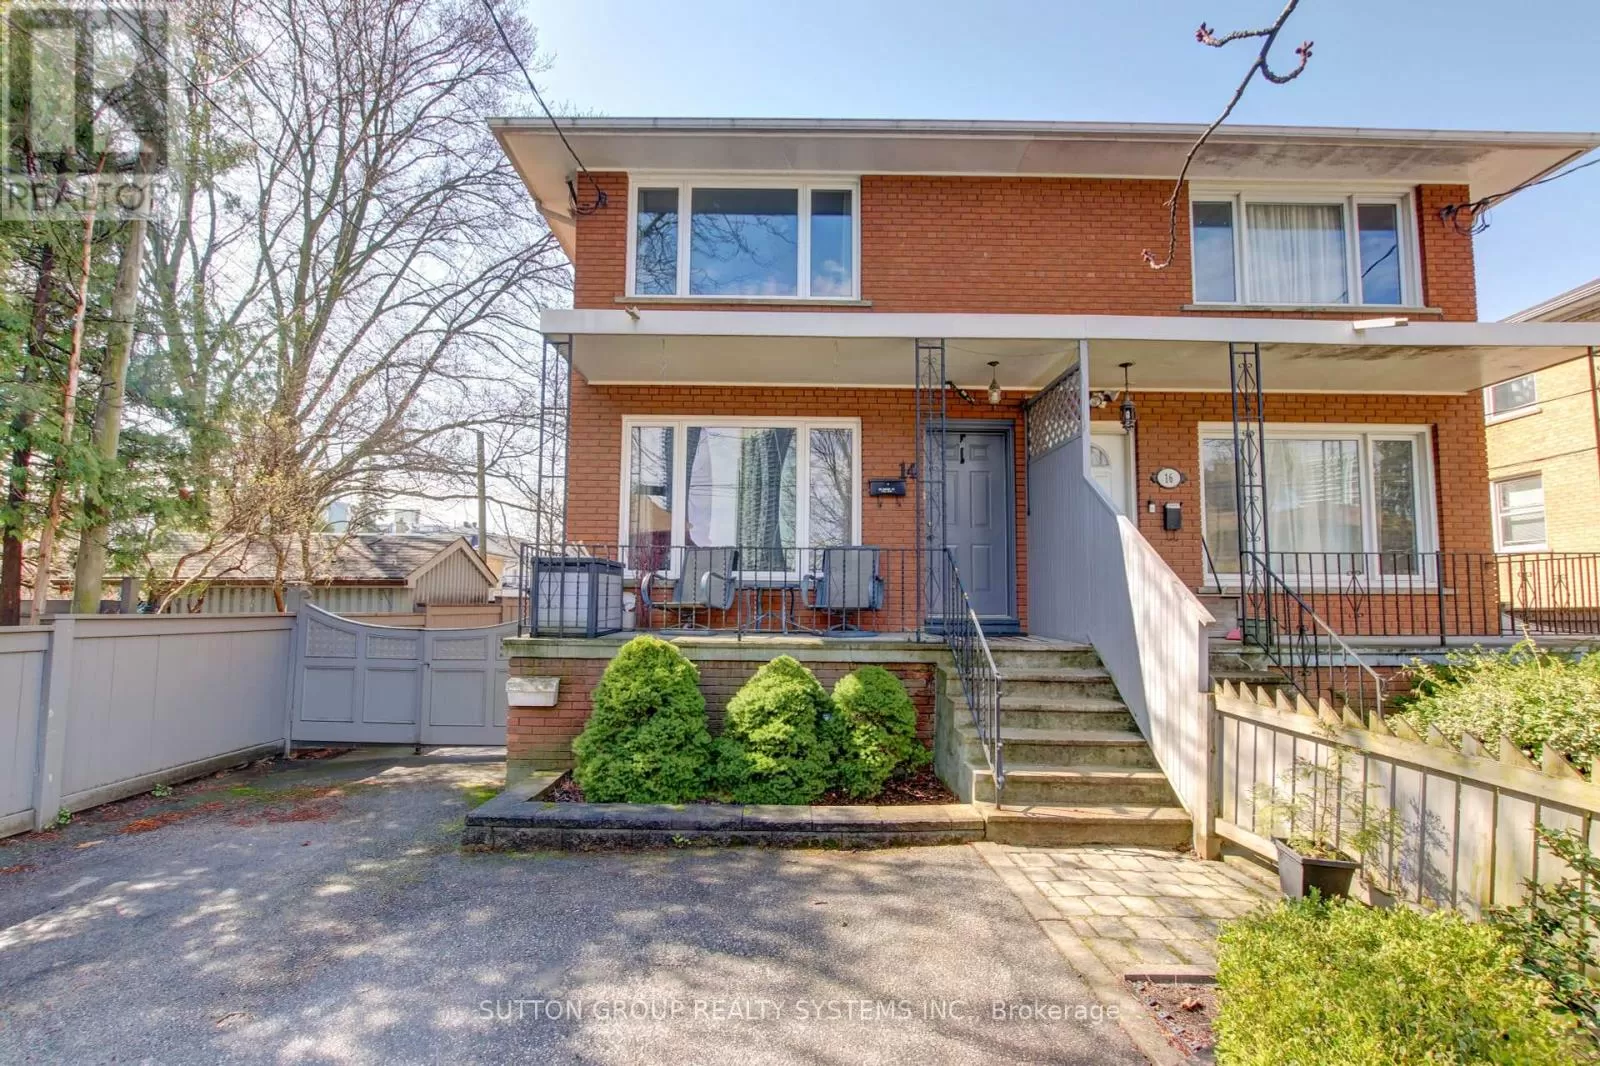 House for rent: 14 Louisa Street, Toronto, Ontario M8V 2K6